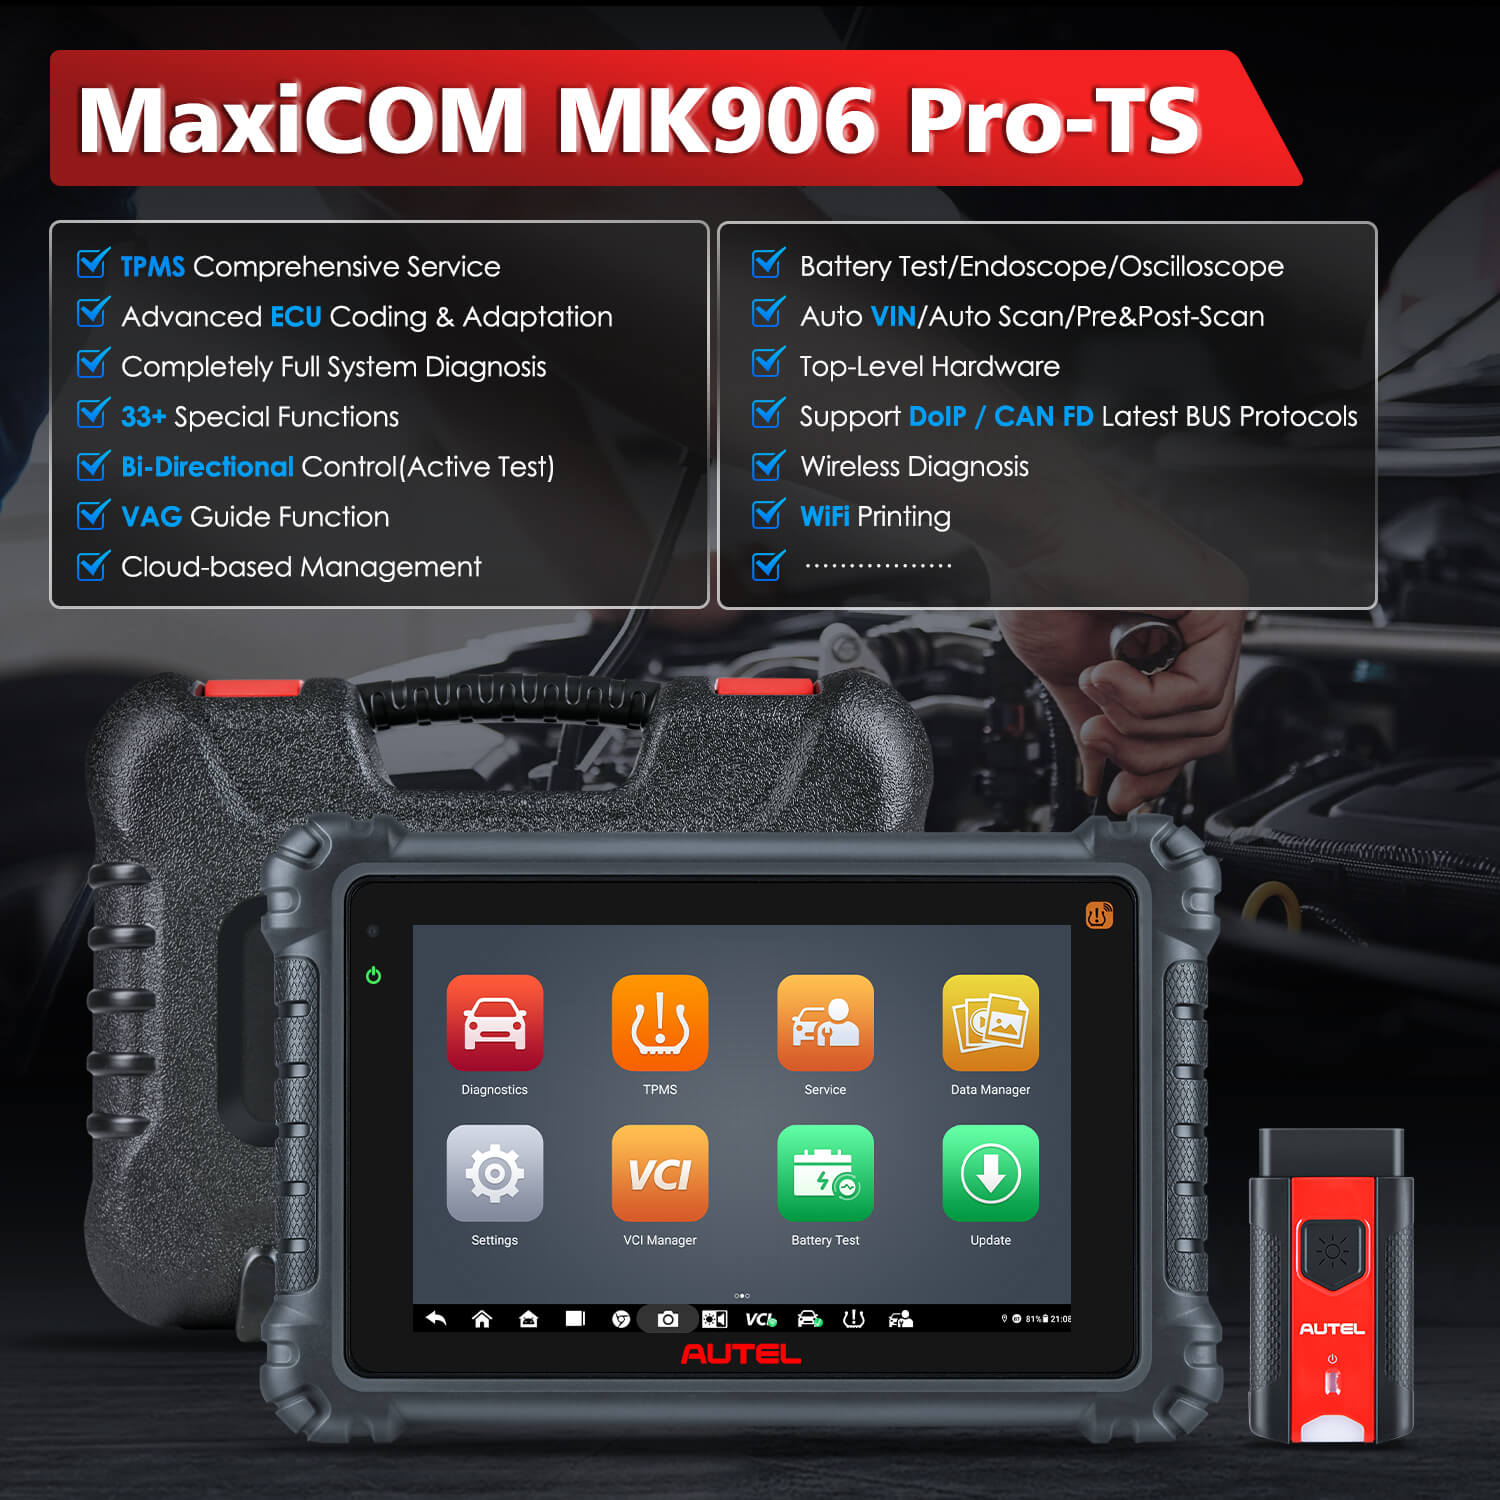 AUTEL MAXICOM MK906 PRO-TS Main Features